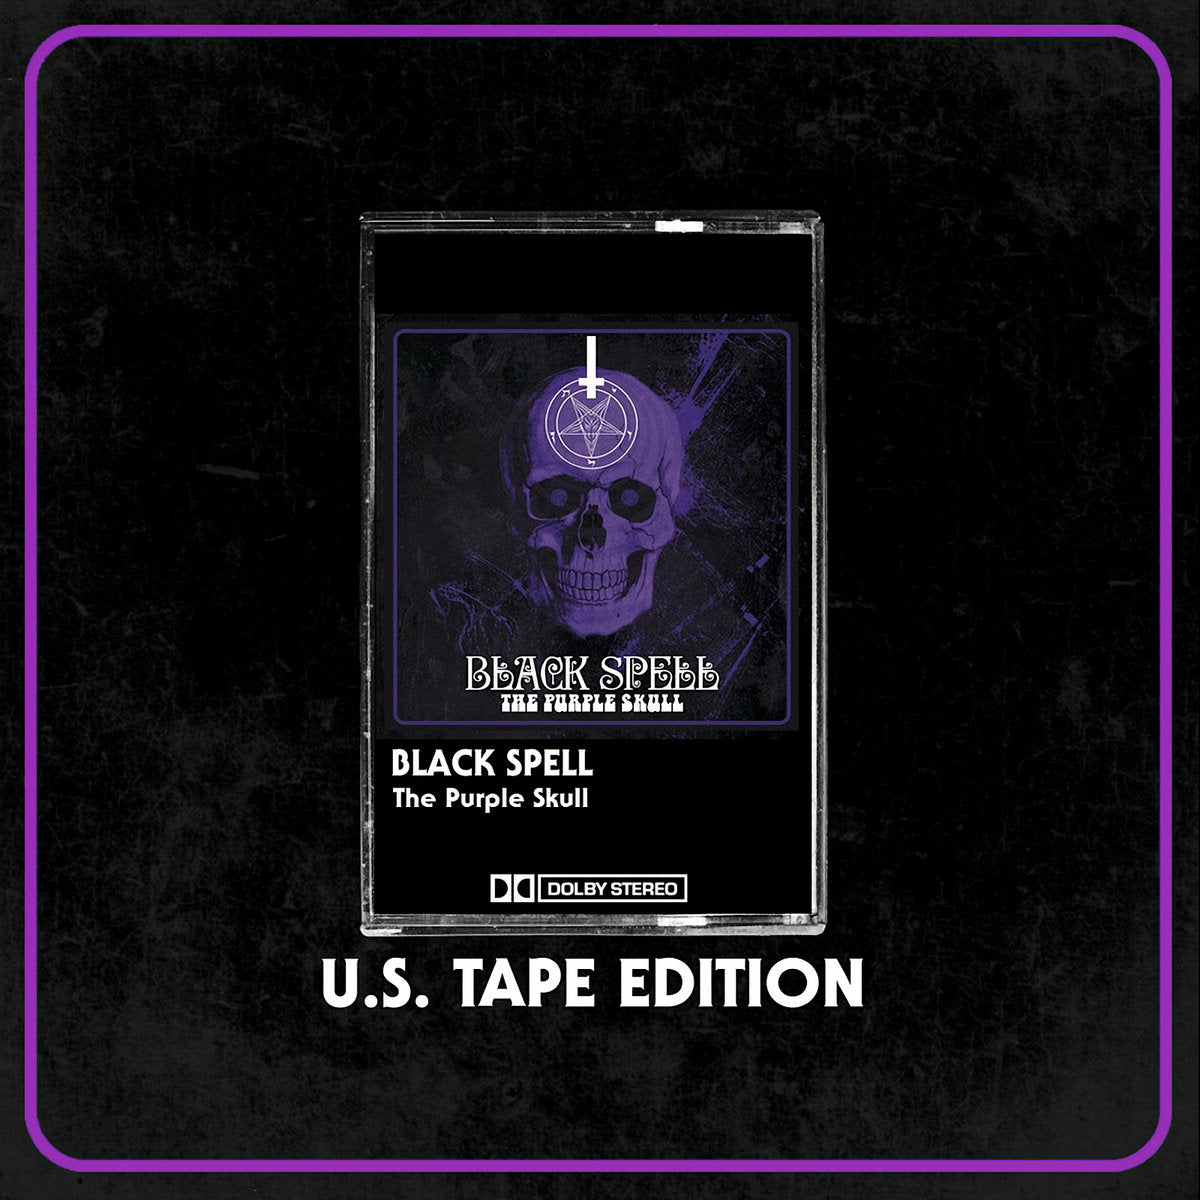 Black Spell - "The Purple Skull" Cassette